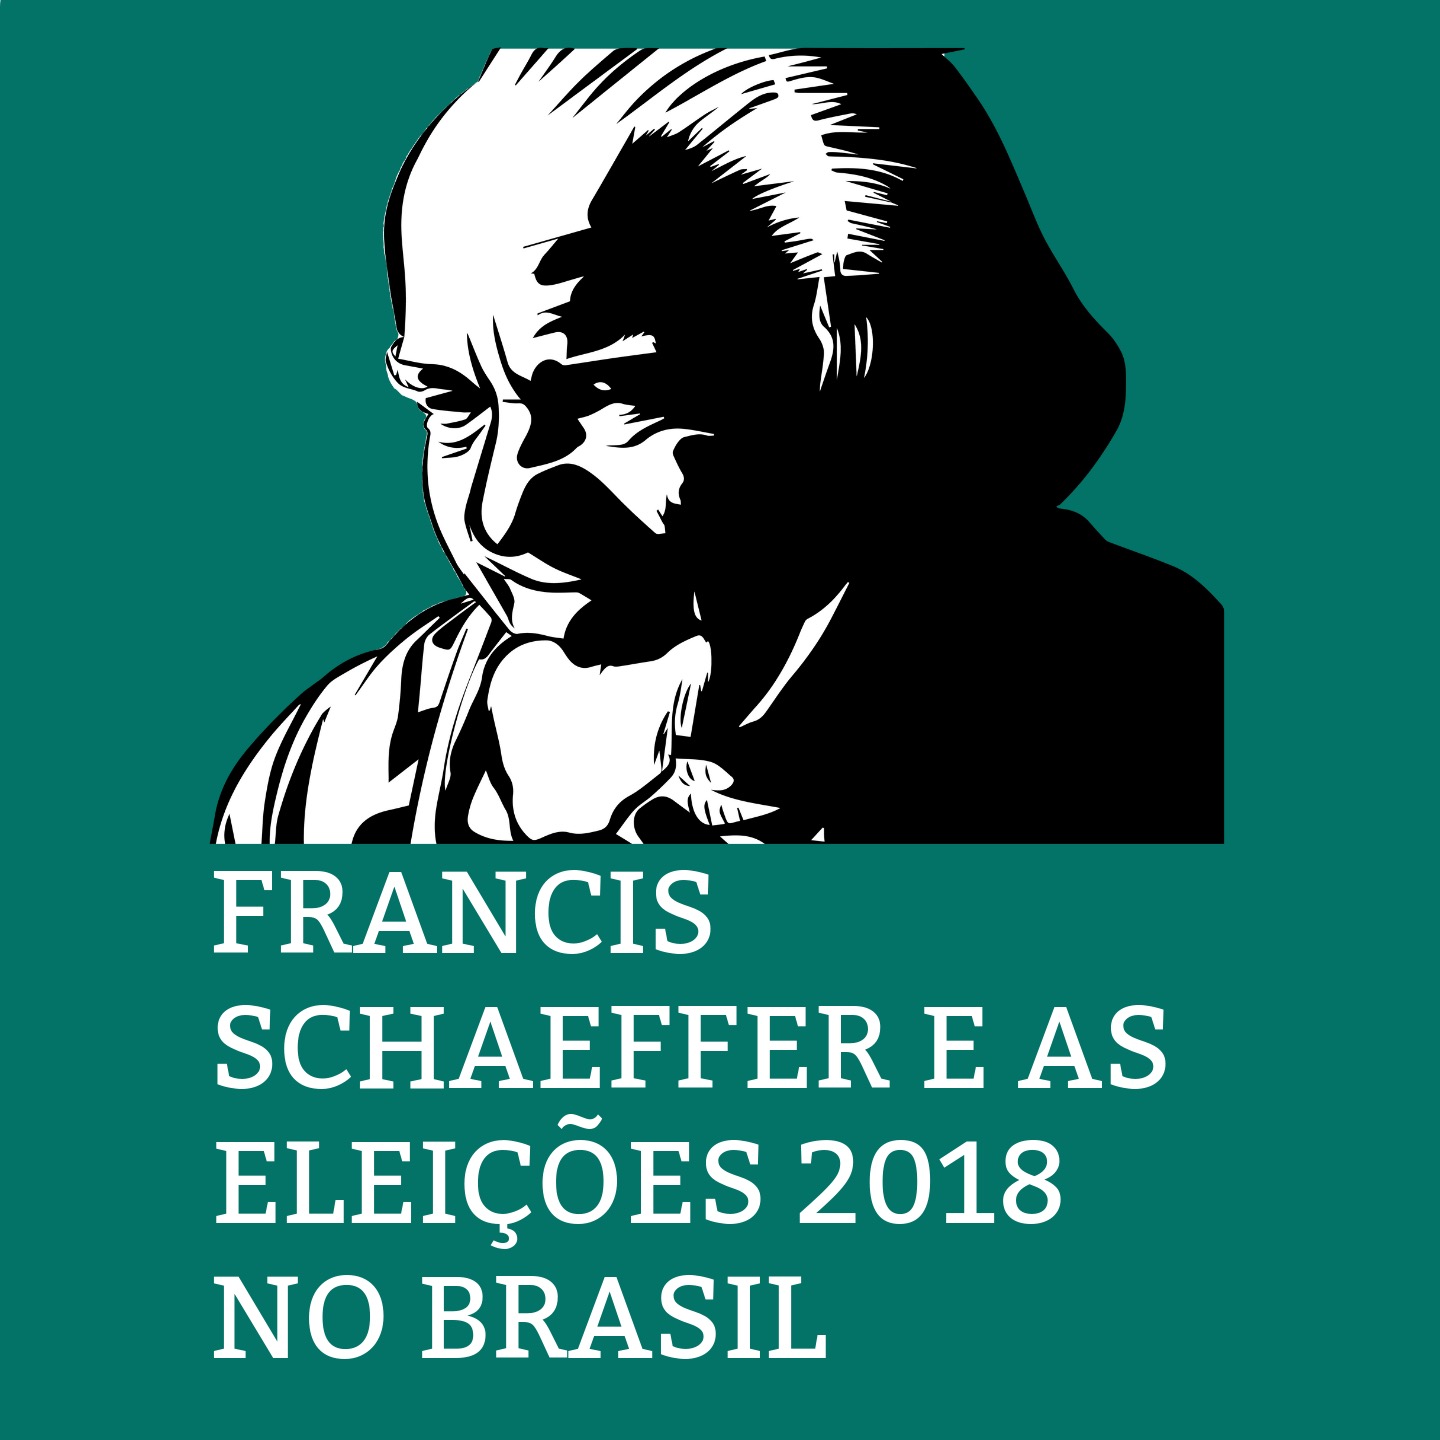 Francis Schaeffer e as eleições 2018 no Brasil